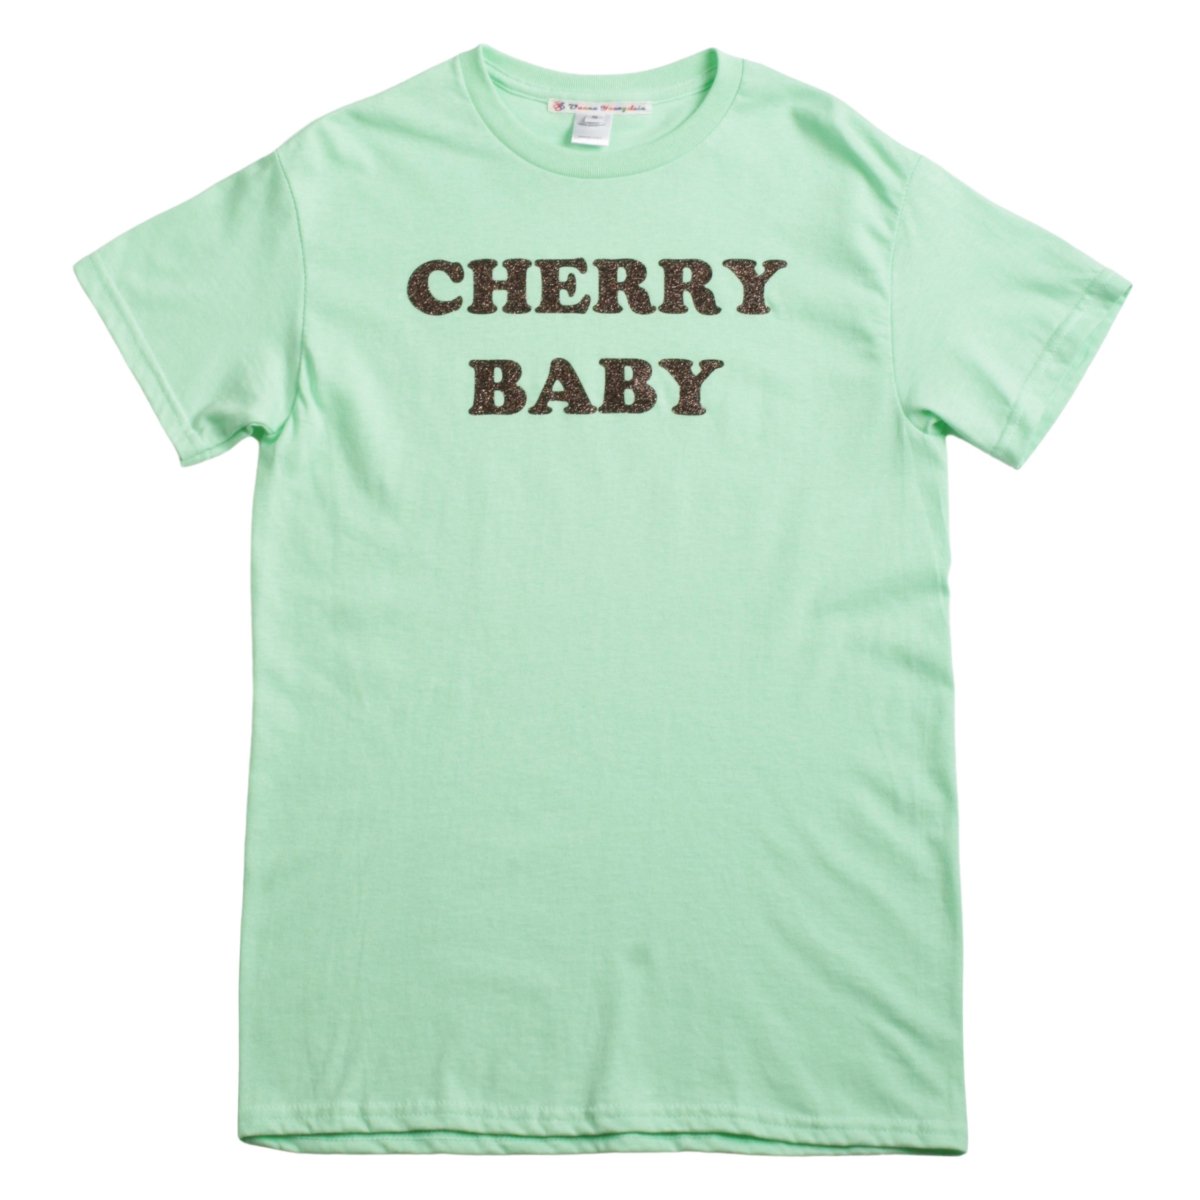 Cherry Baby Tee【Green】